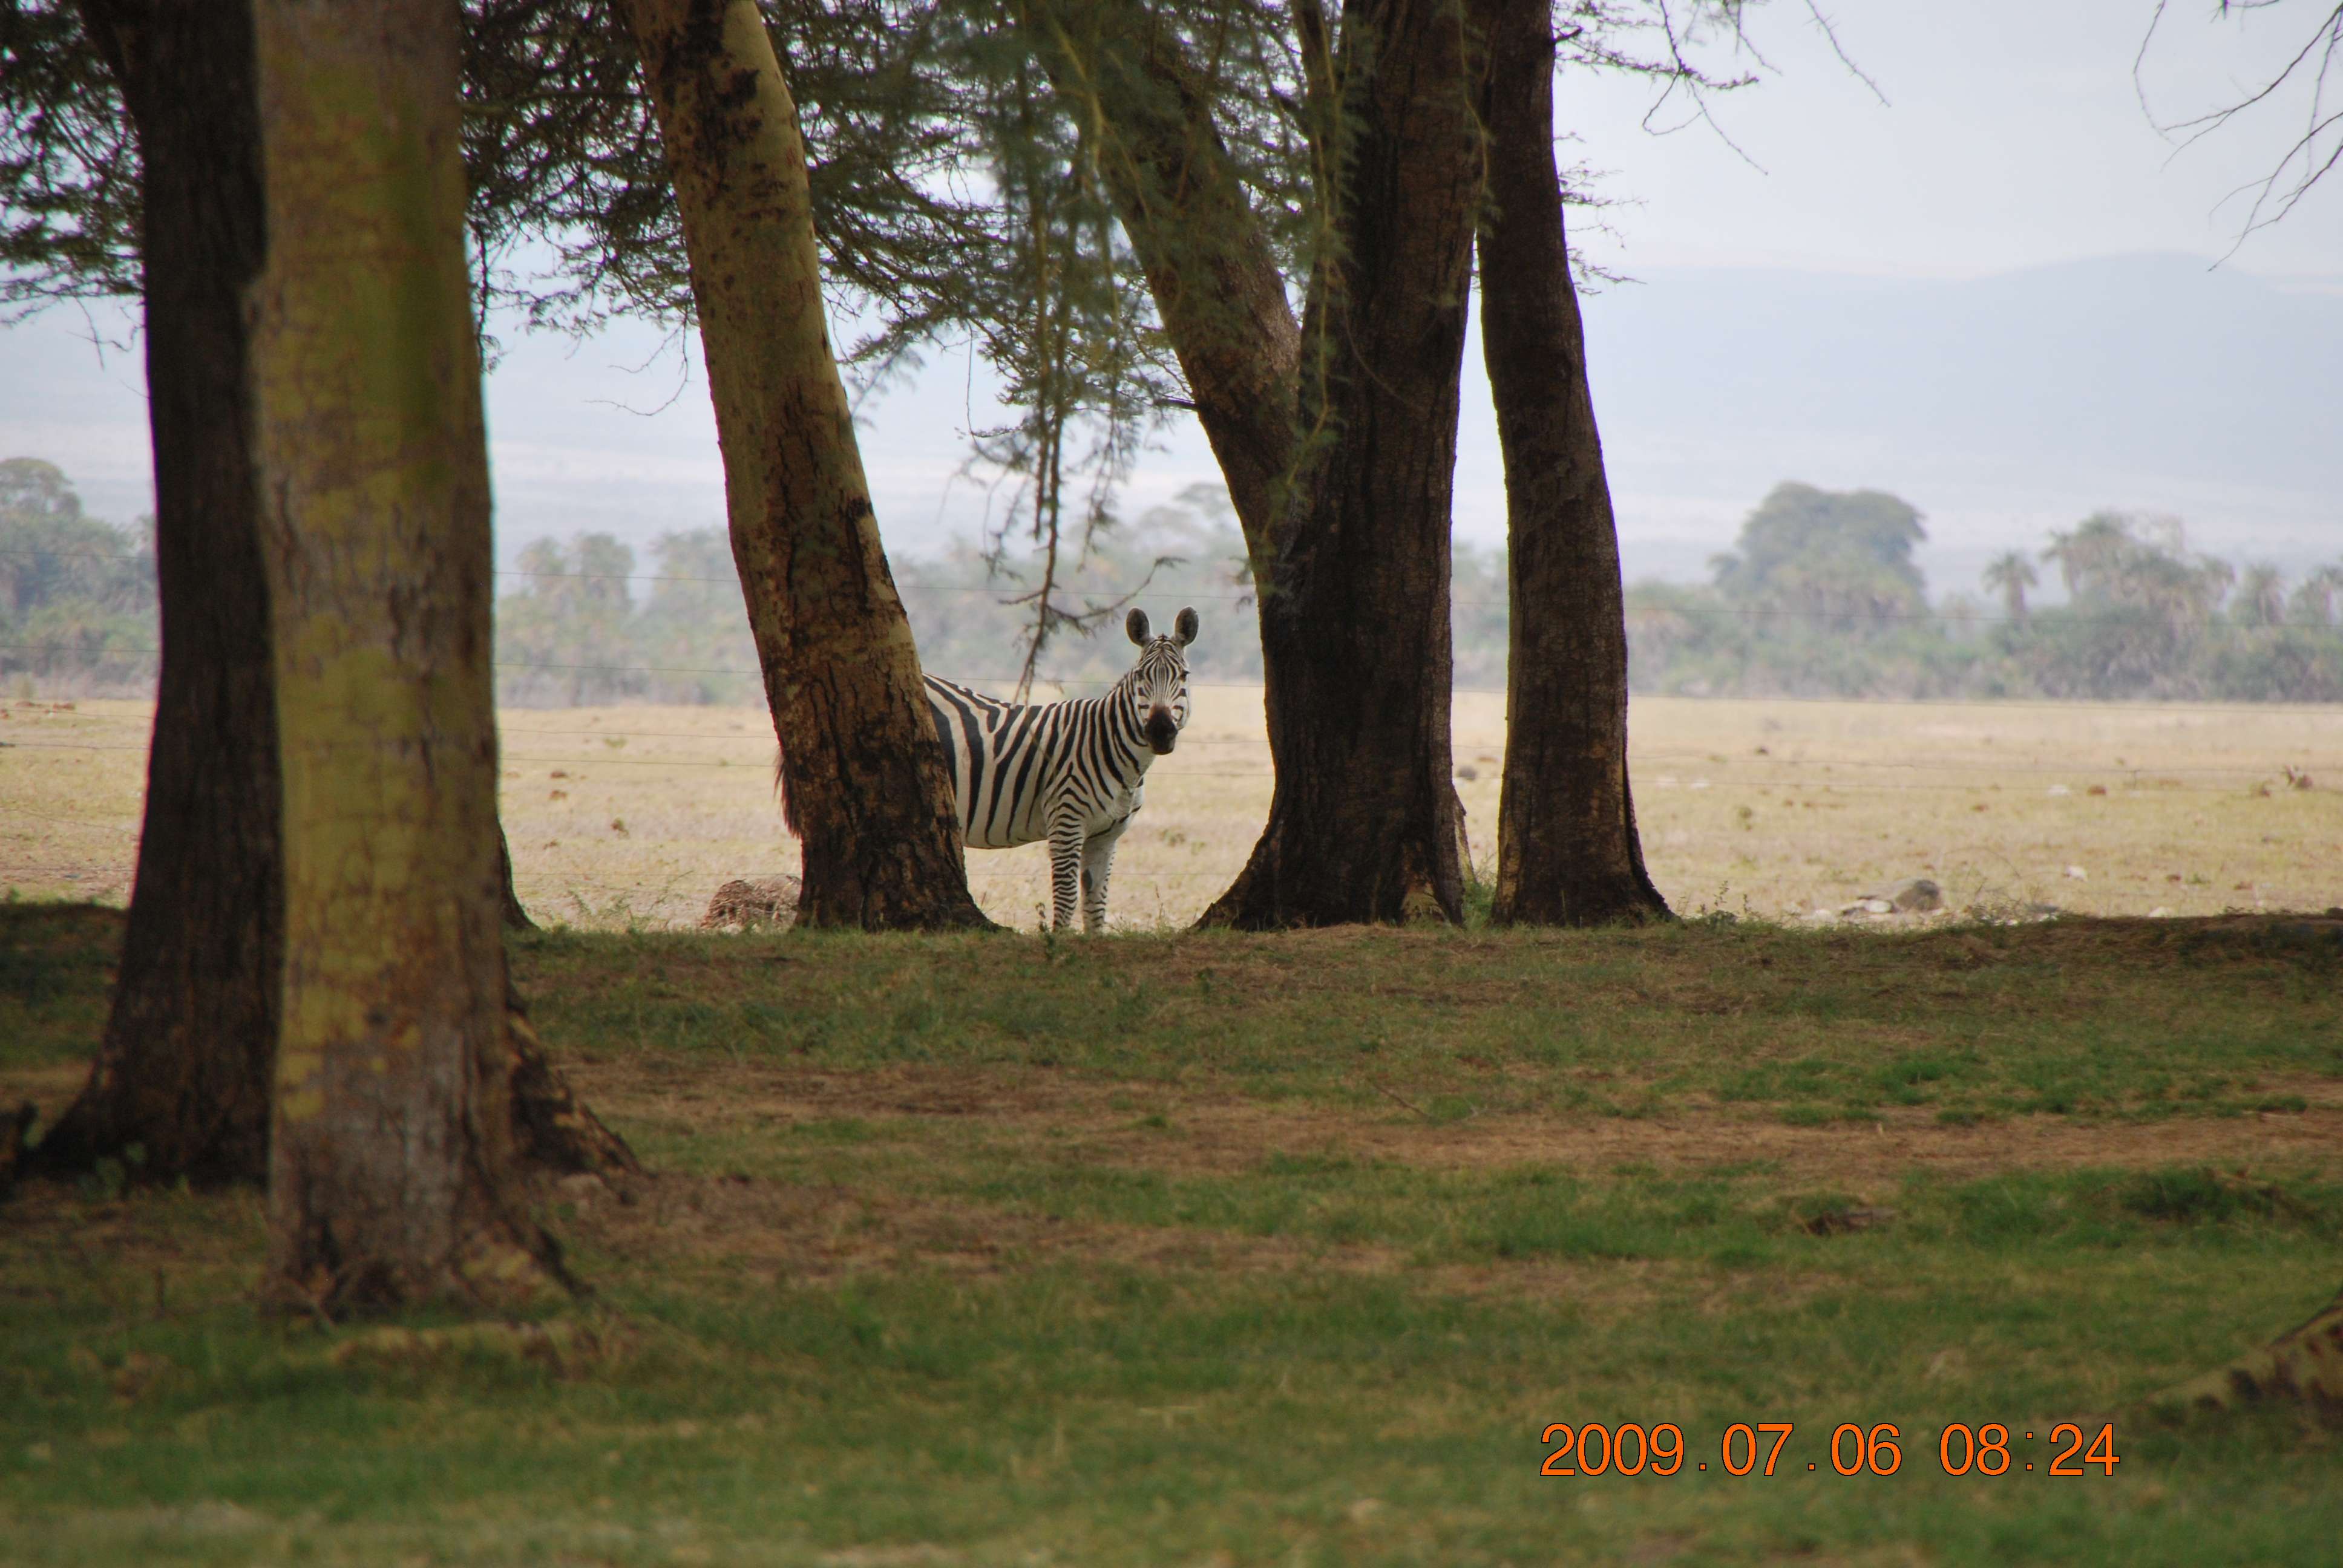 Kenia una experiencia inolvidable - Blogs de Kenia - Amboseli, el descubrimiento de Africa (4)